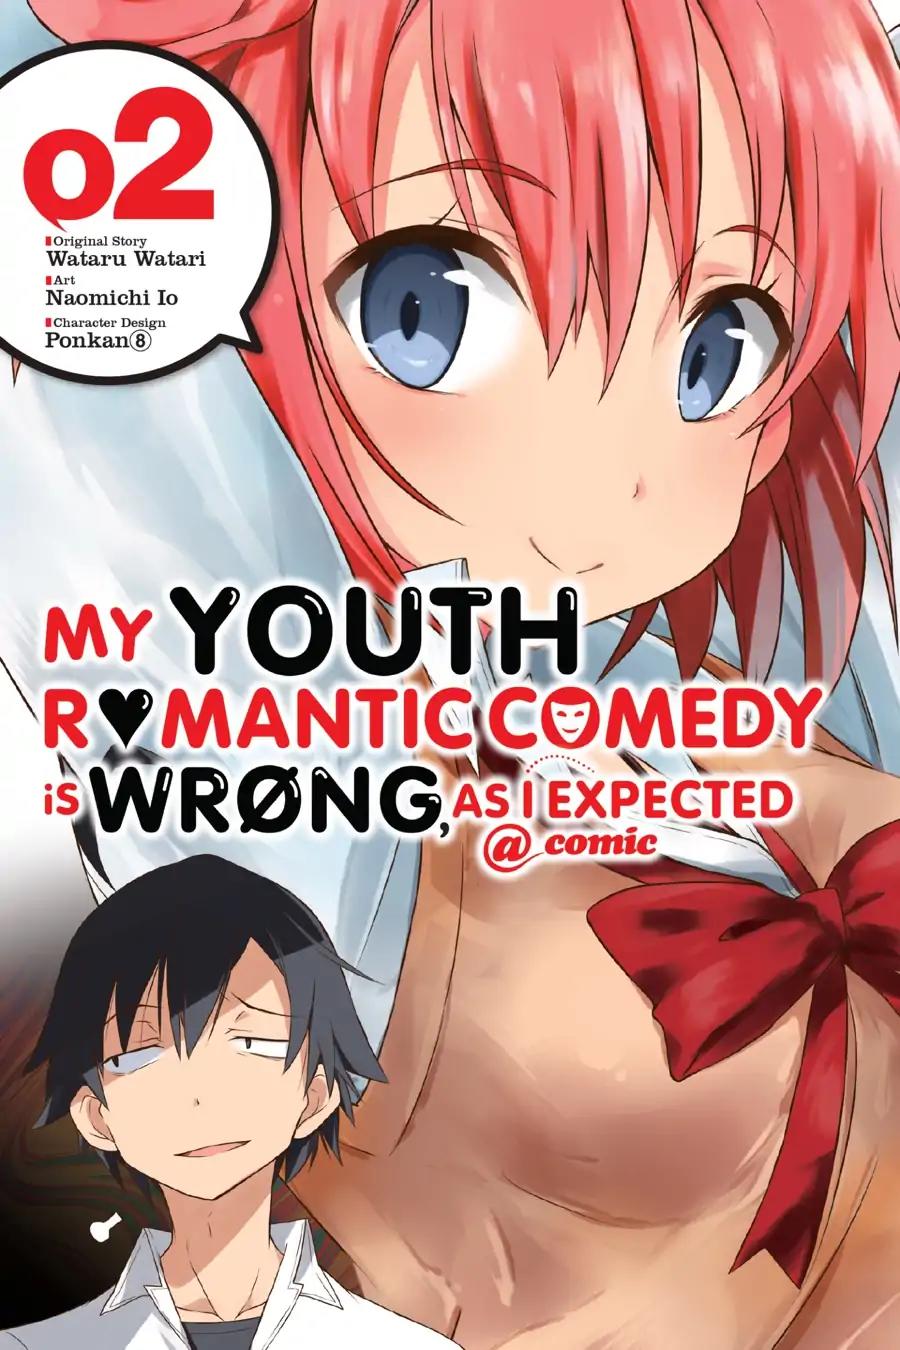 Yahari Ore no Seishun Rabukome wa Machigatte Iru. @ Comic Vol.2 Chapter 6: